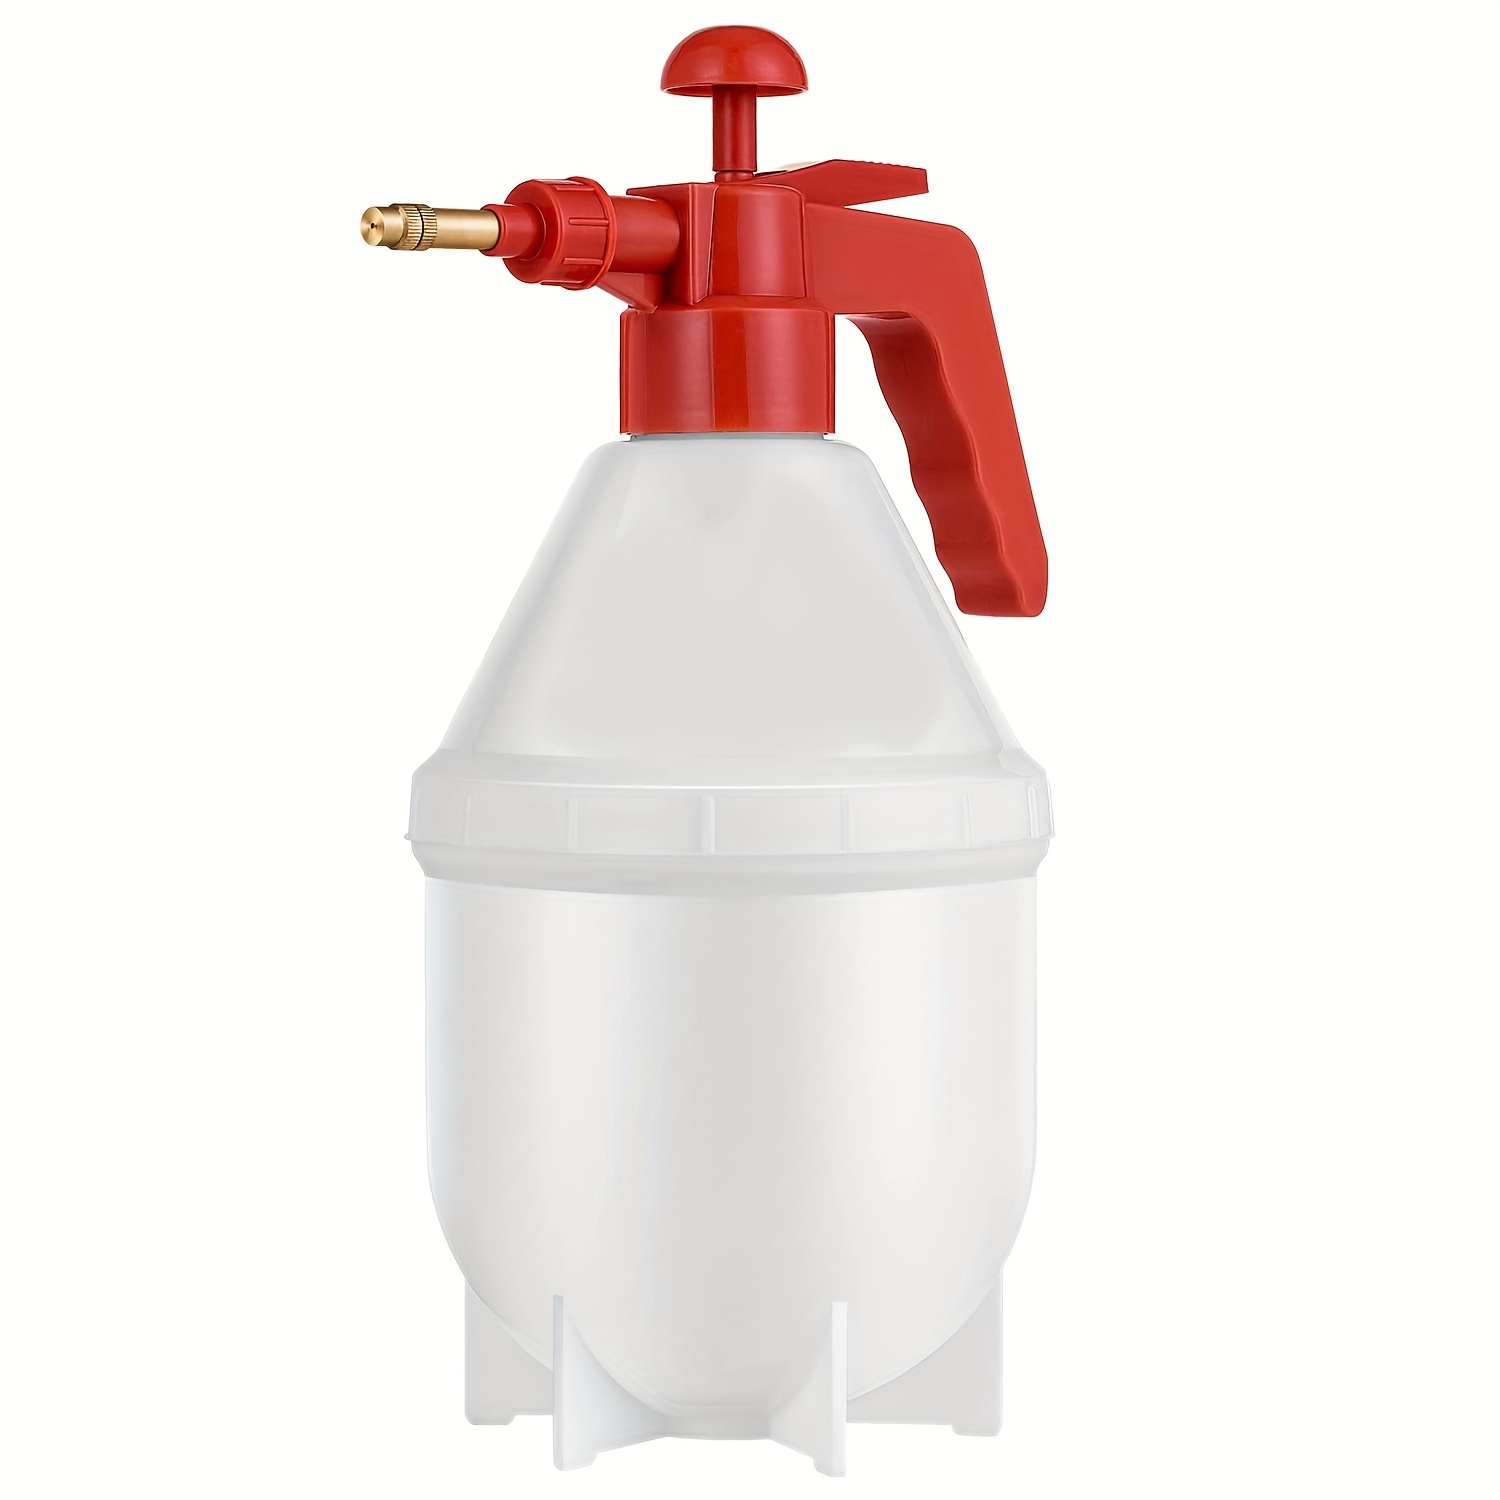 Pulverizador Agua 1 Litro. Spray Pulverizador Boquilla Ajustable